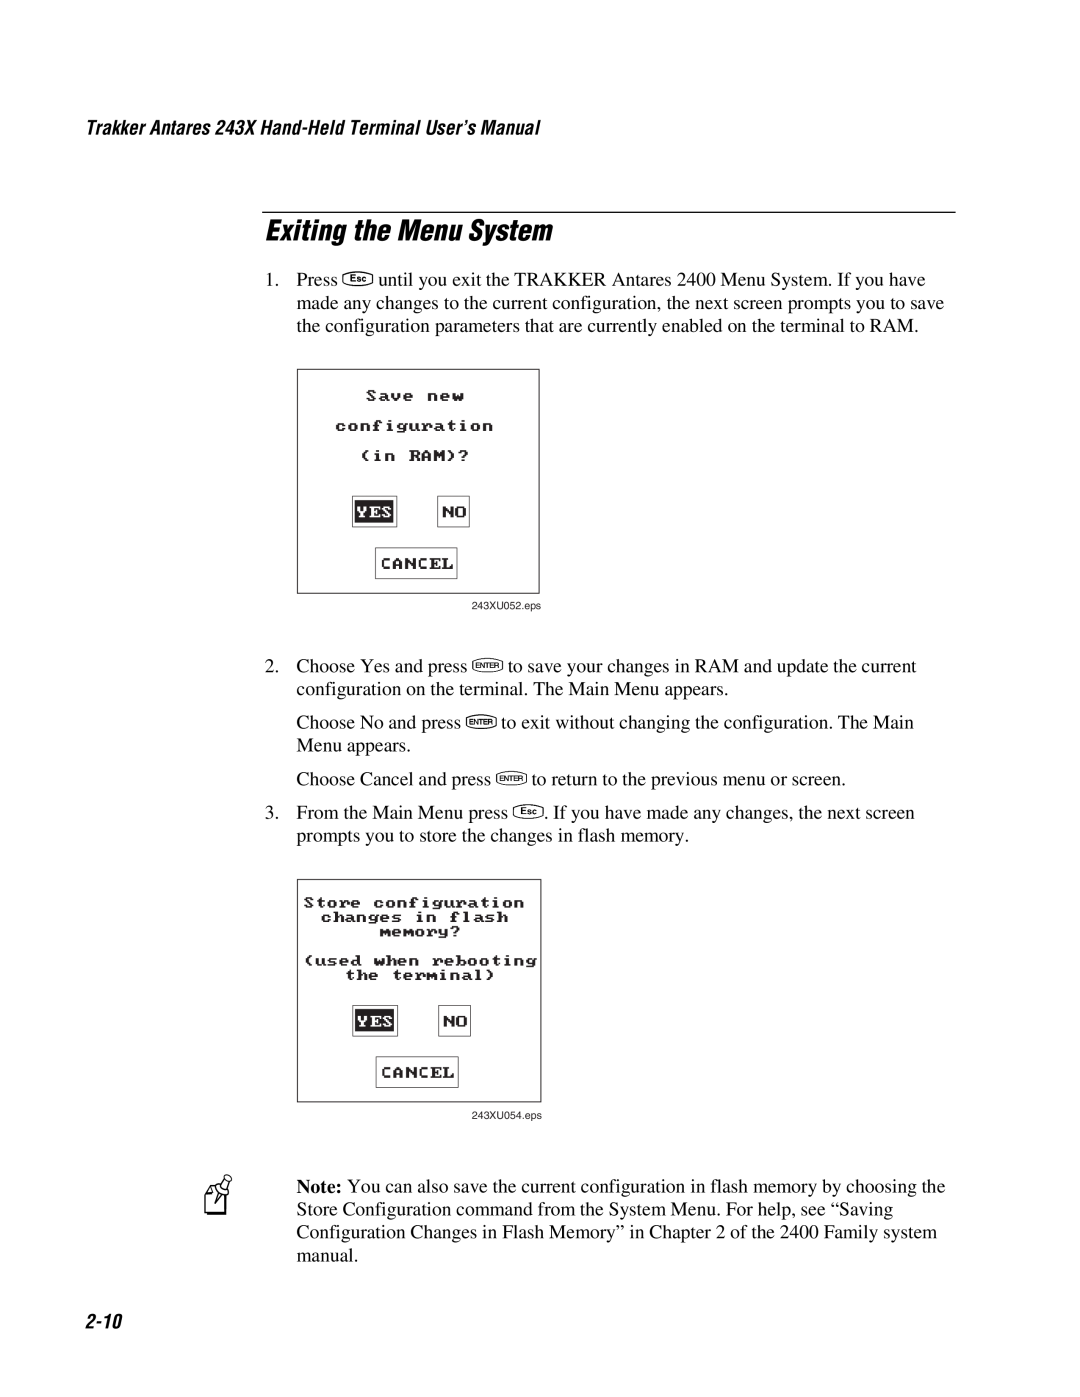 IBM user manual Exiting the Menu System, 2-10, Trakker Antares 243X Hand-Held Terminal User’s Manual 